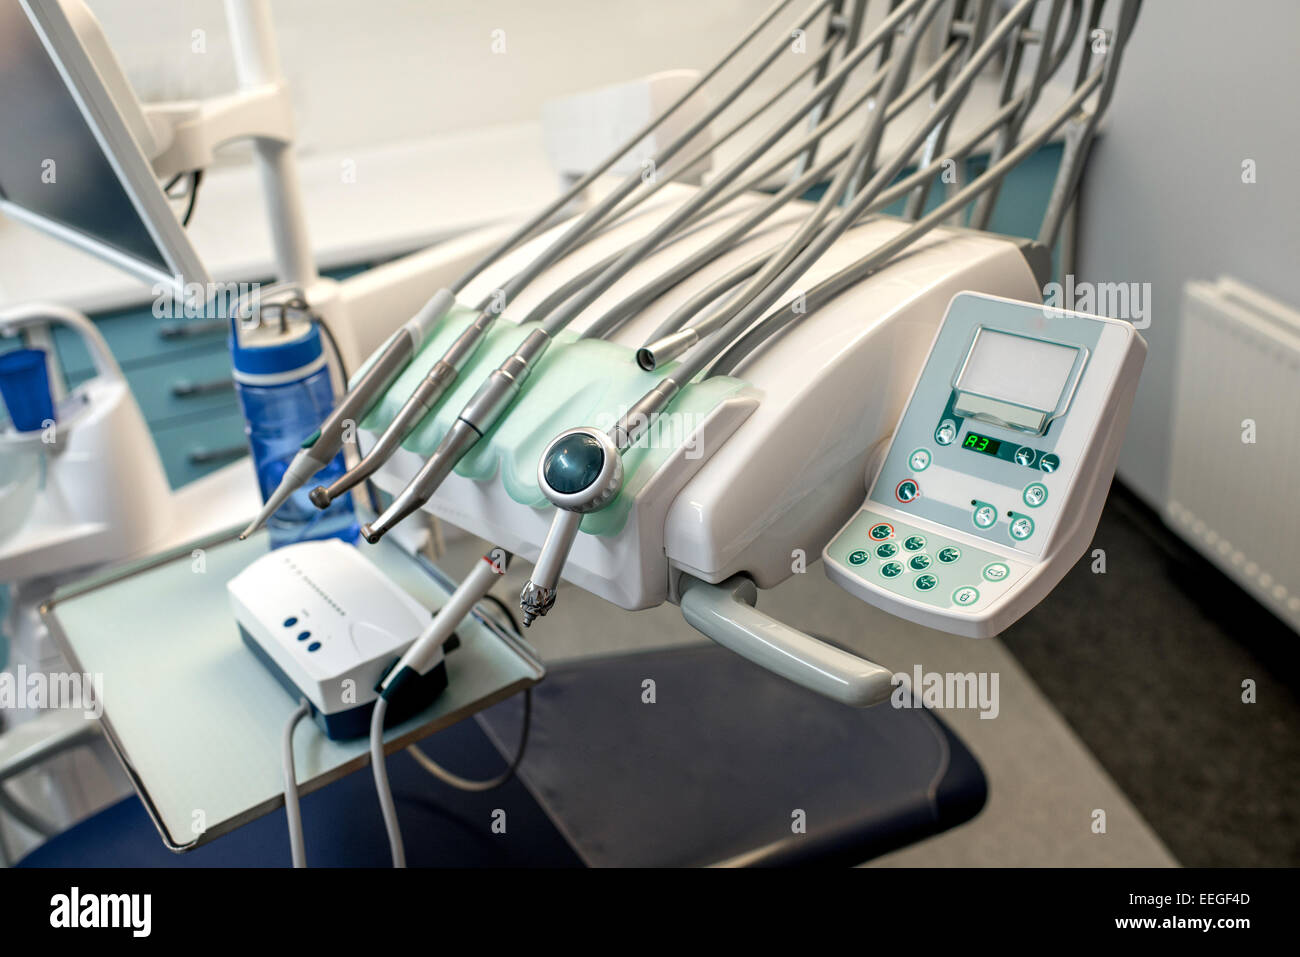 Riunito dentale con attrezzature per lo studio dentistico Foto Stock